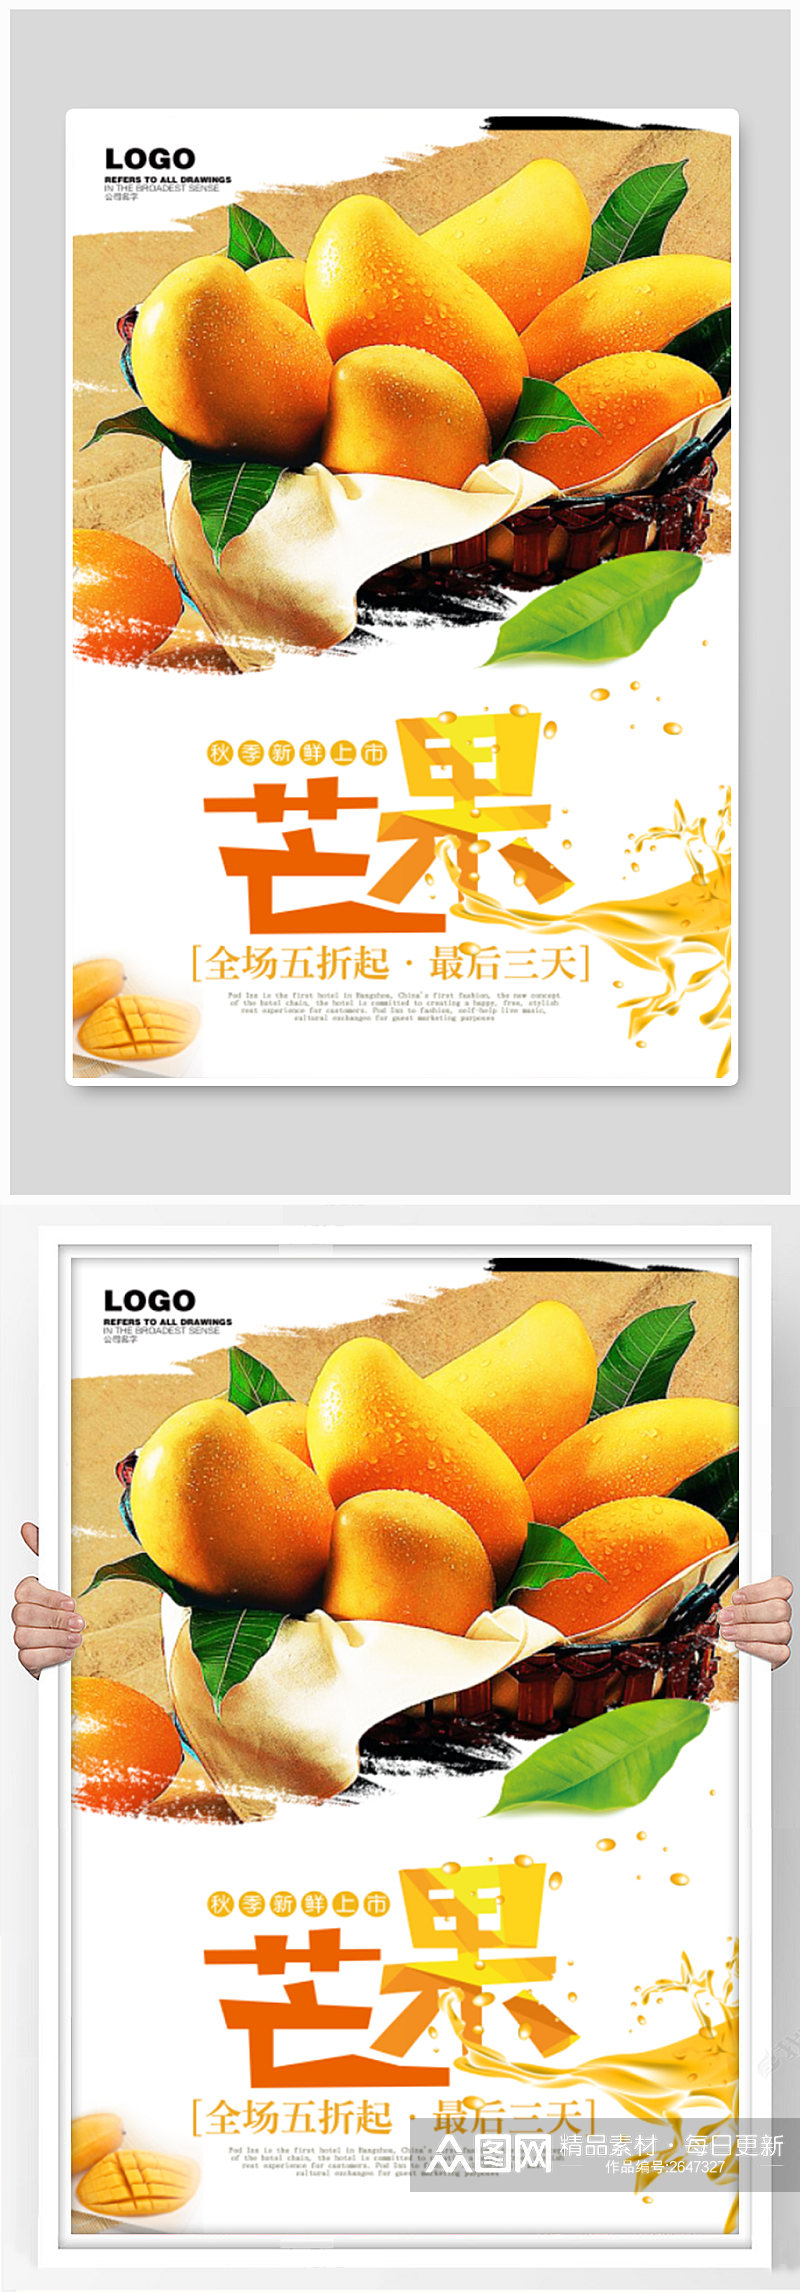 水果店芒果促销海报素材